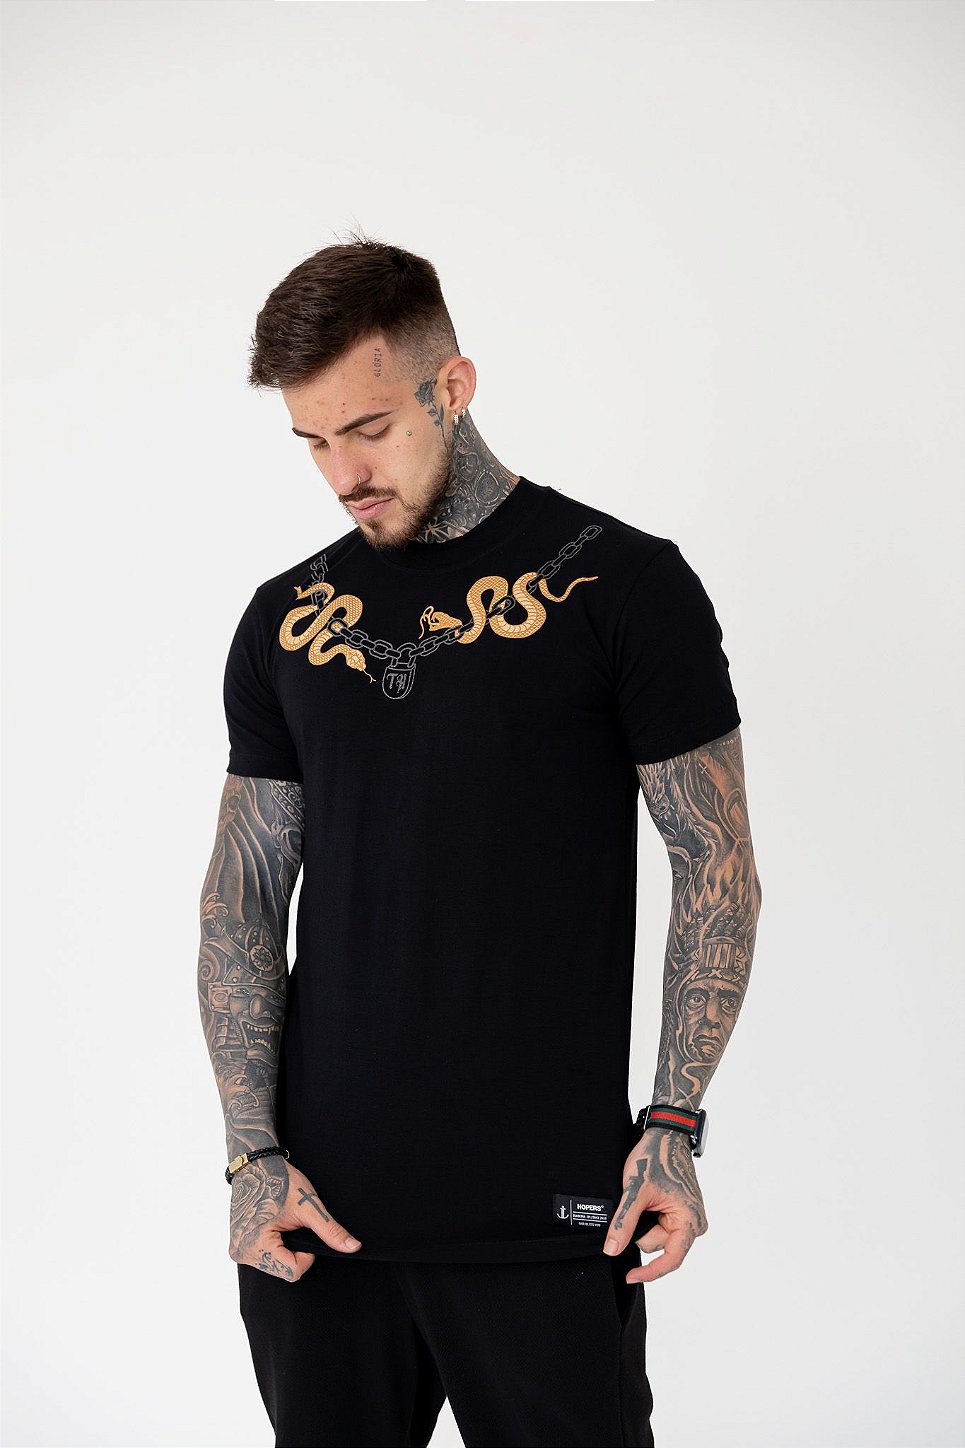 Camiseta Medusa Snake - Branca